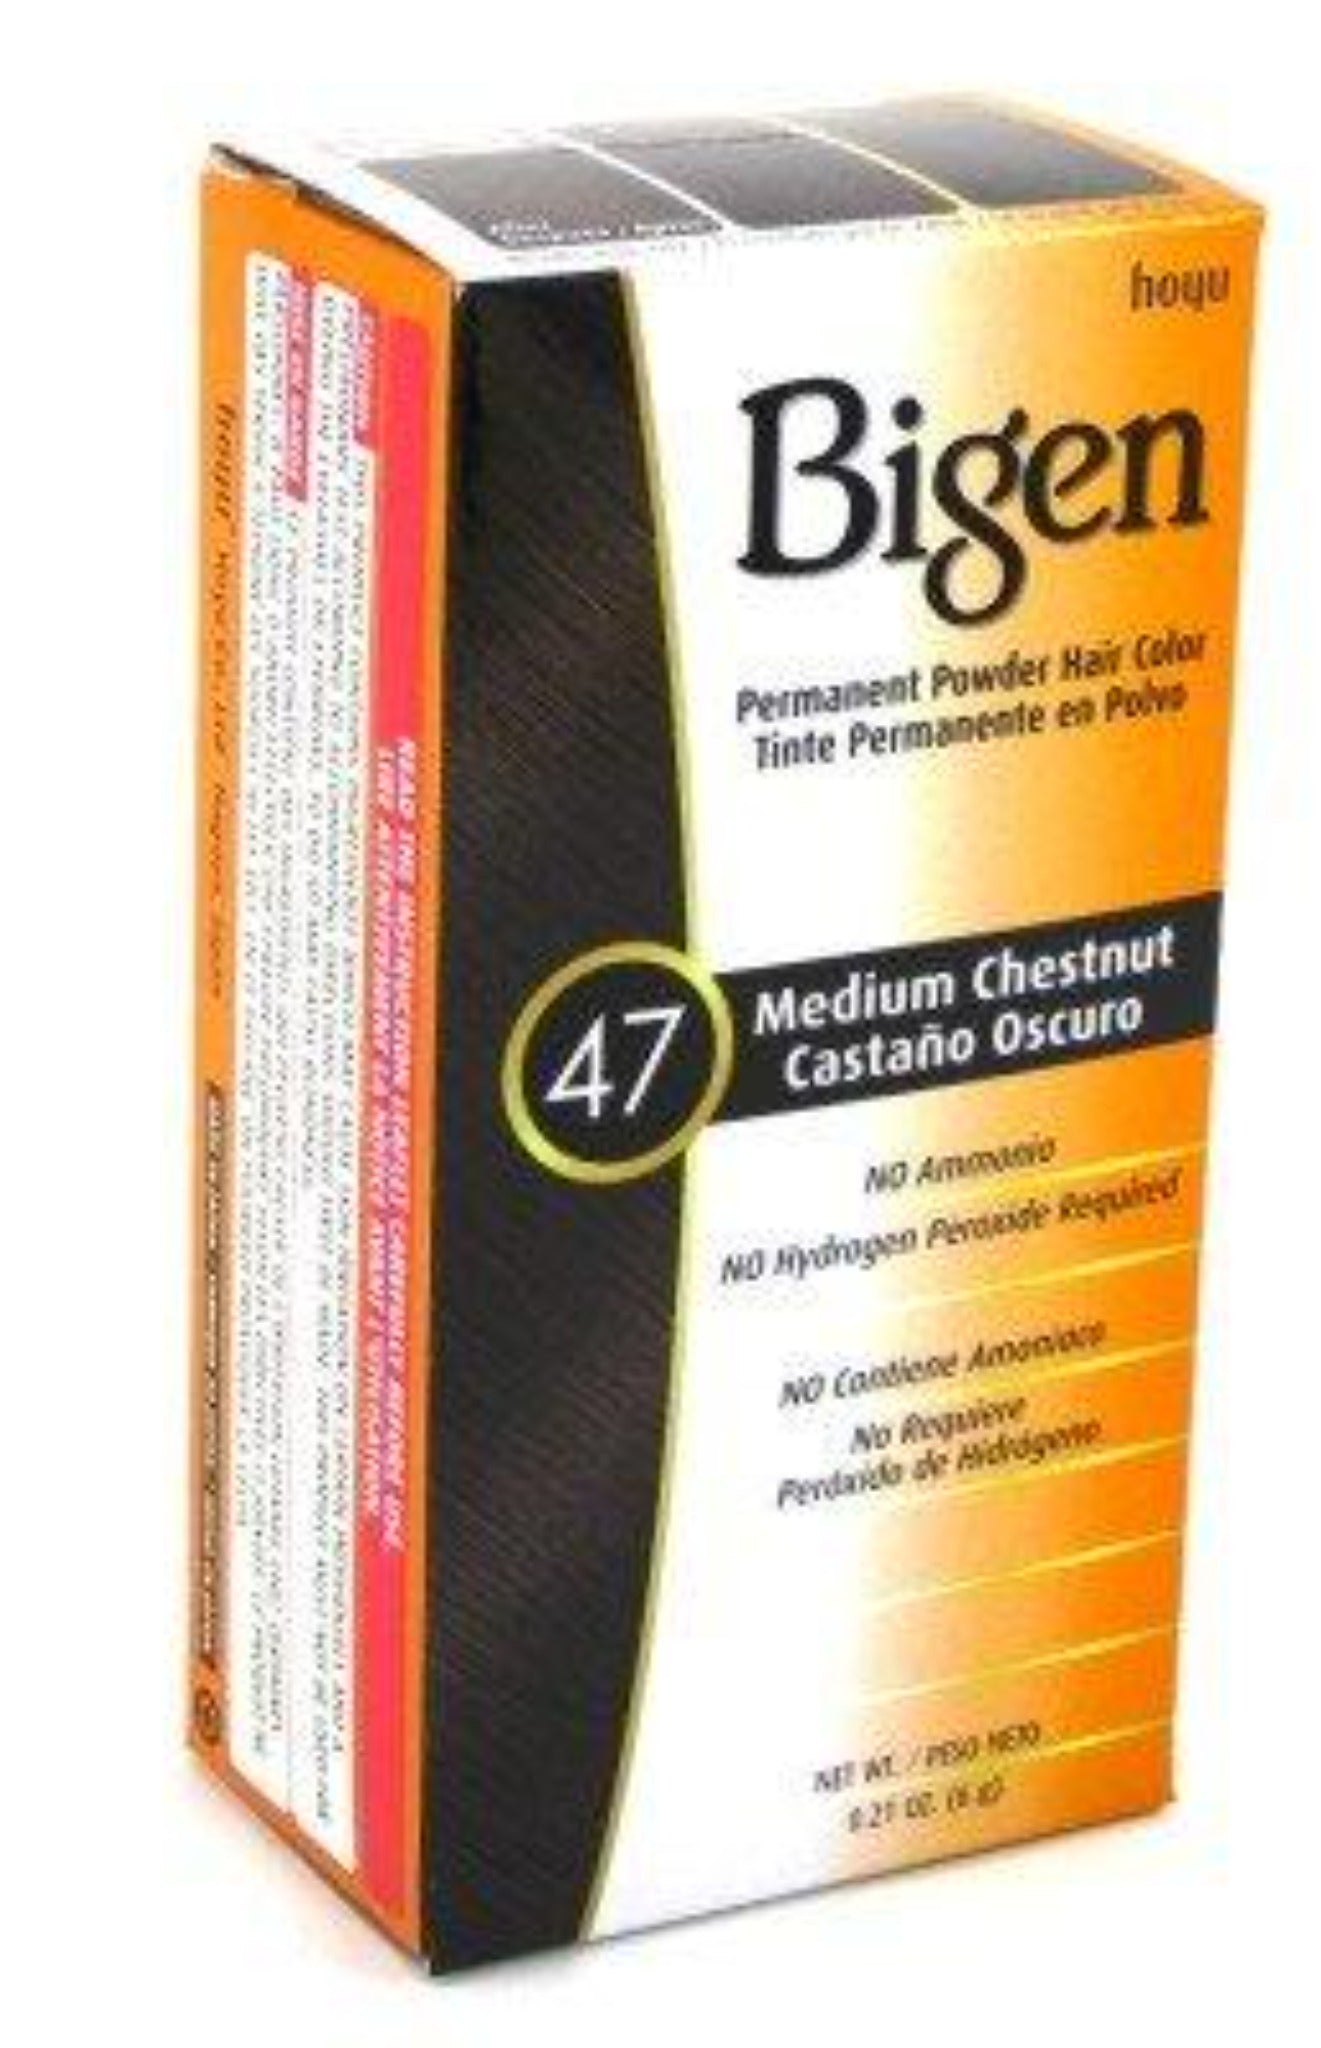 Bigen # 47 Medium Chestnut